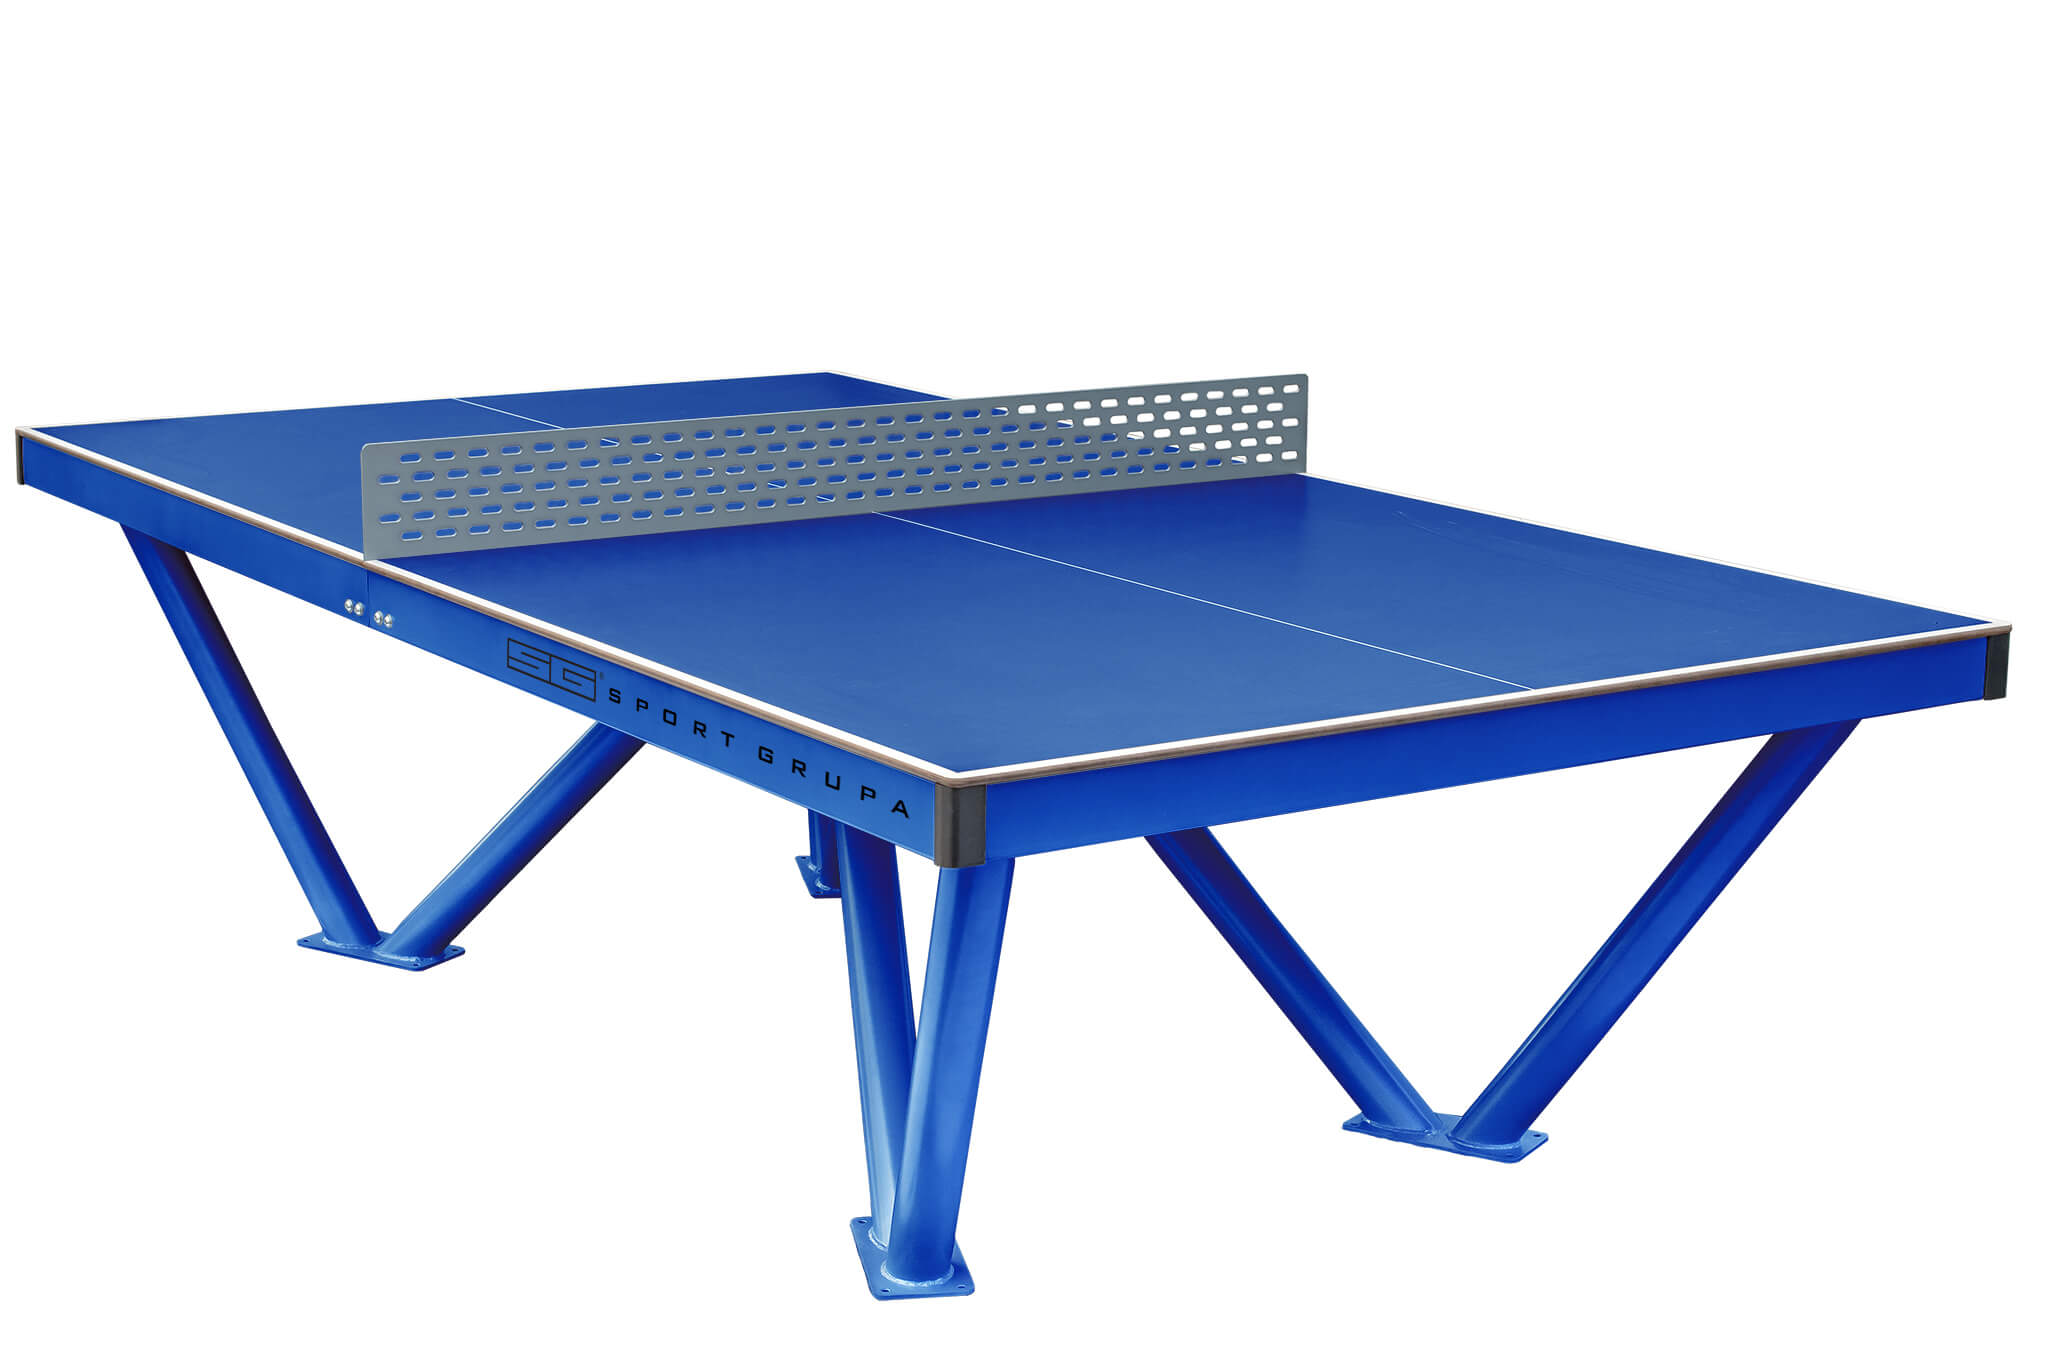 Стол для настольного тенниса для улицы. Теннисный стол City strong Outdoor. Теннисный стол Borneo Drive Blue. Антивандальный теннисный стол СВС-57. Теннисный стол всепогодный proxima_giant Dragon, арт. S6202.